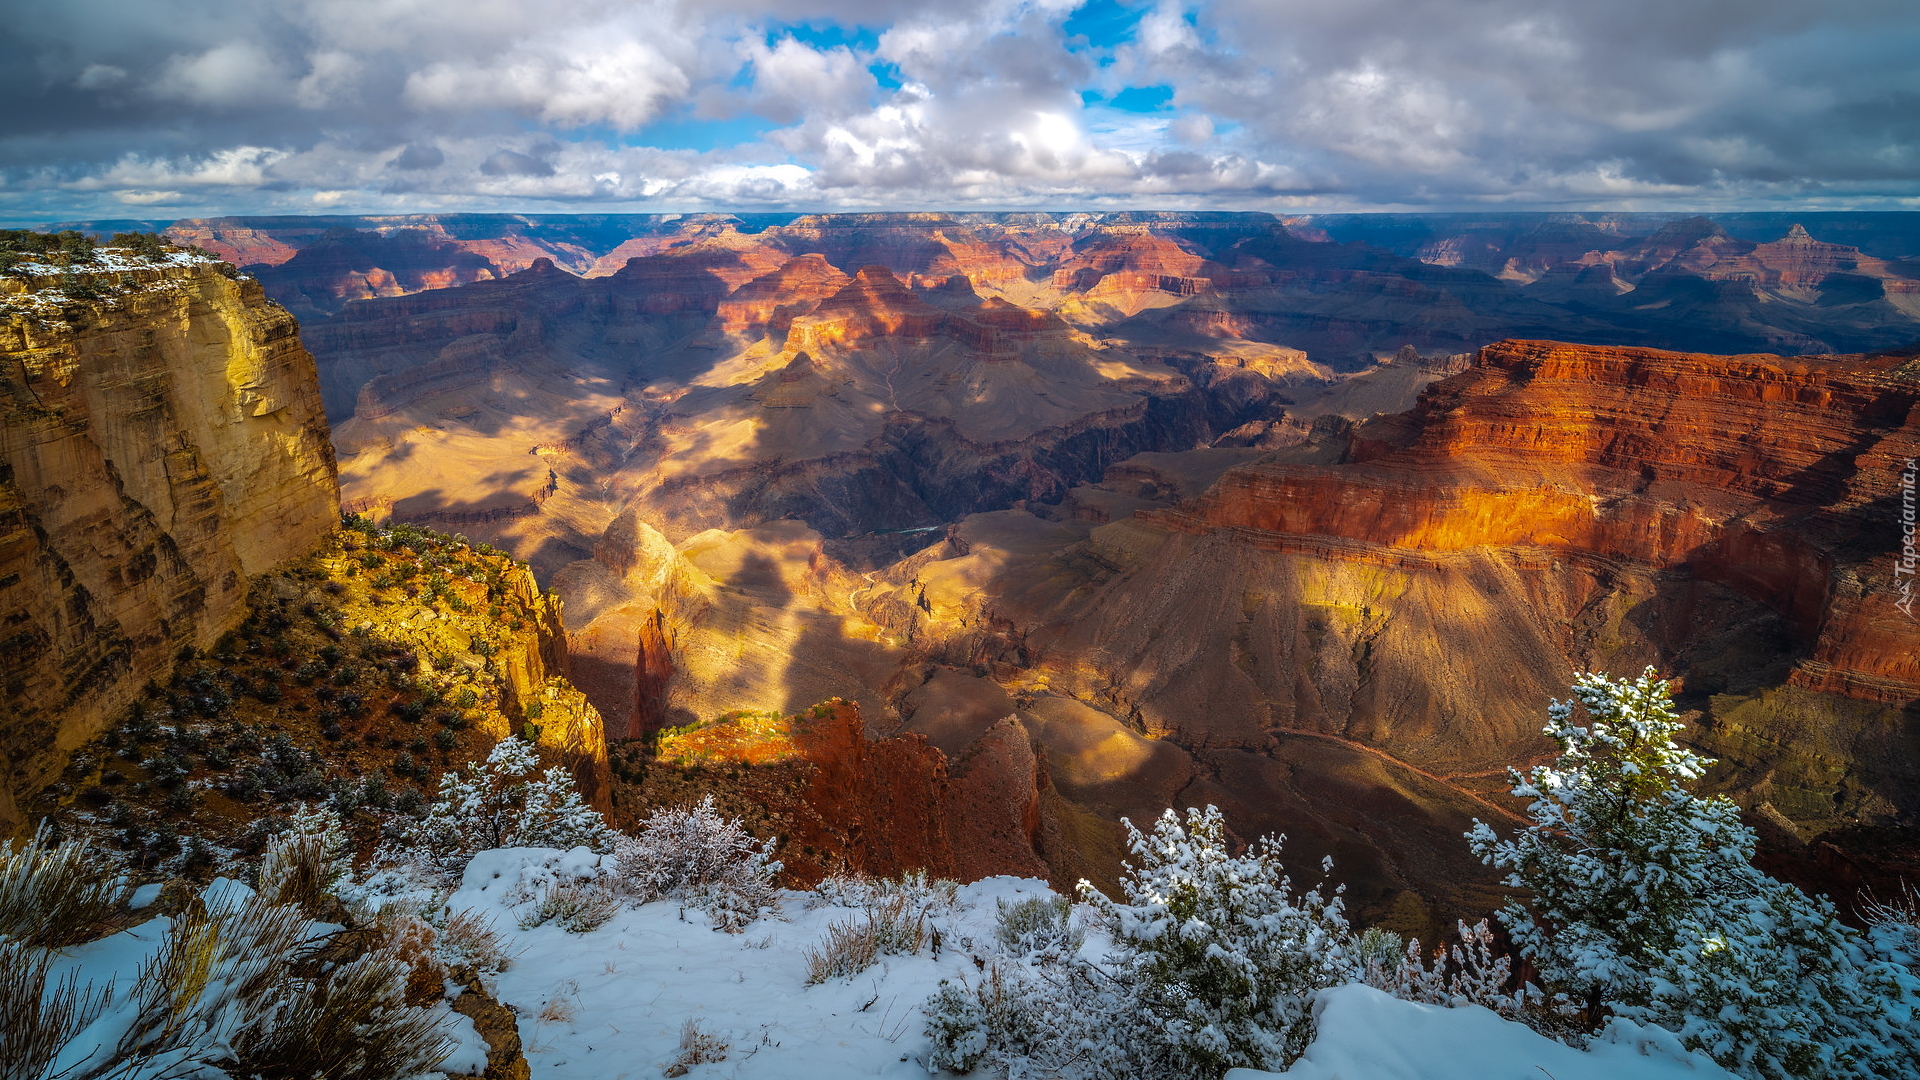 Park Narodowy Wielkiego Kanionu, Wielki Kanion Kolorado, Grand Canyon, Rośliny, Śnieg, Góry, Arizona, Stany Zjednoczone